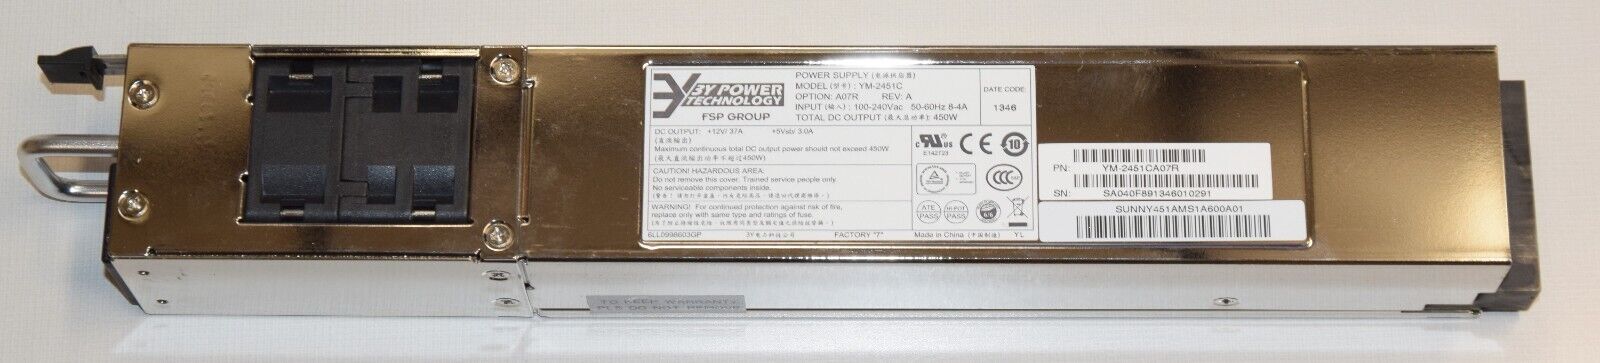 450W Power Supply FSP 3Y Power Technology YM-2451C for Infoblox Trinzic 1400